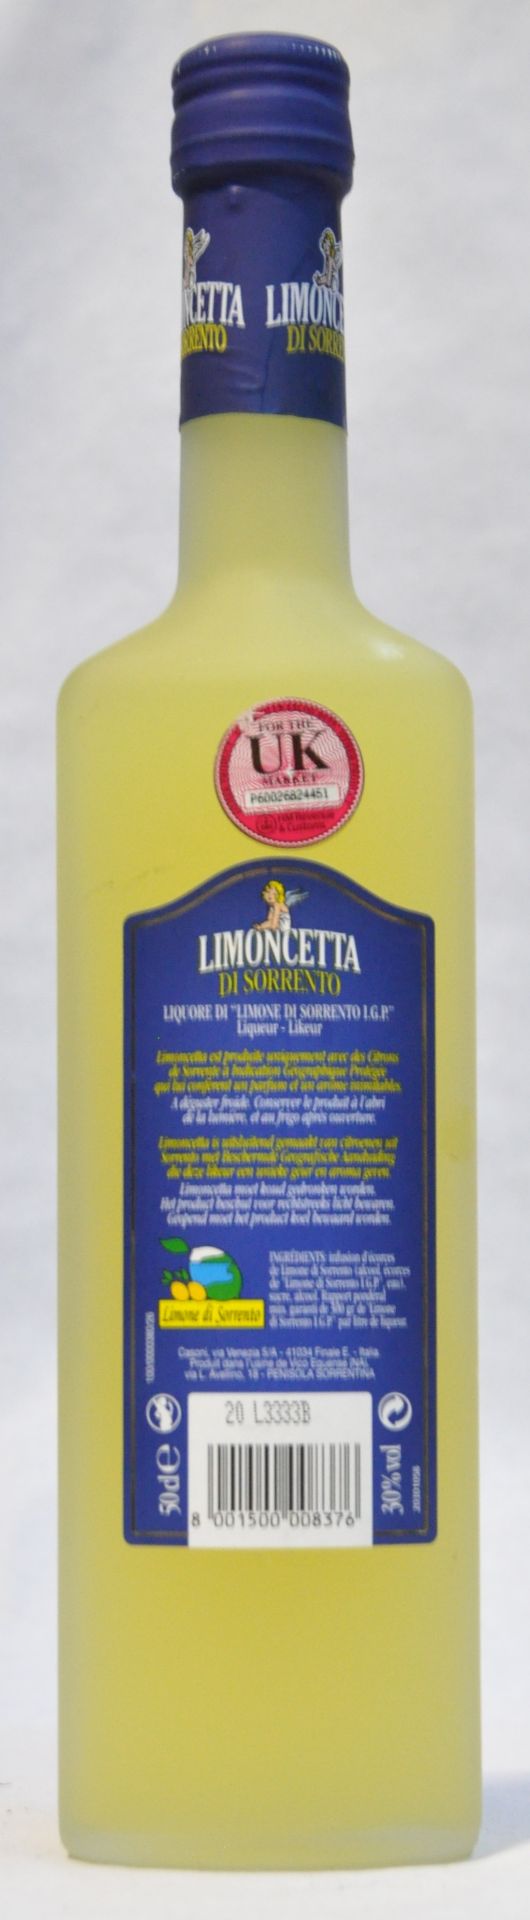 1 x Limoncetta Di Sorrento Italian Liqueur - 50cl Bottle Size - 30% Volume - Ref W1187 - CL101 - - Image 2 of 2